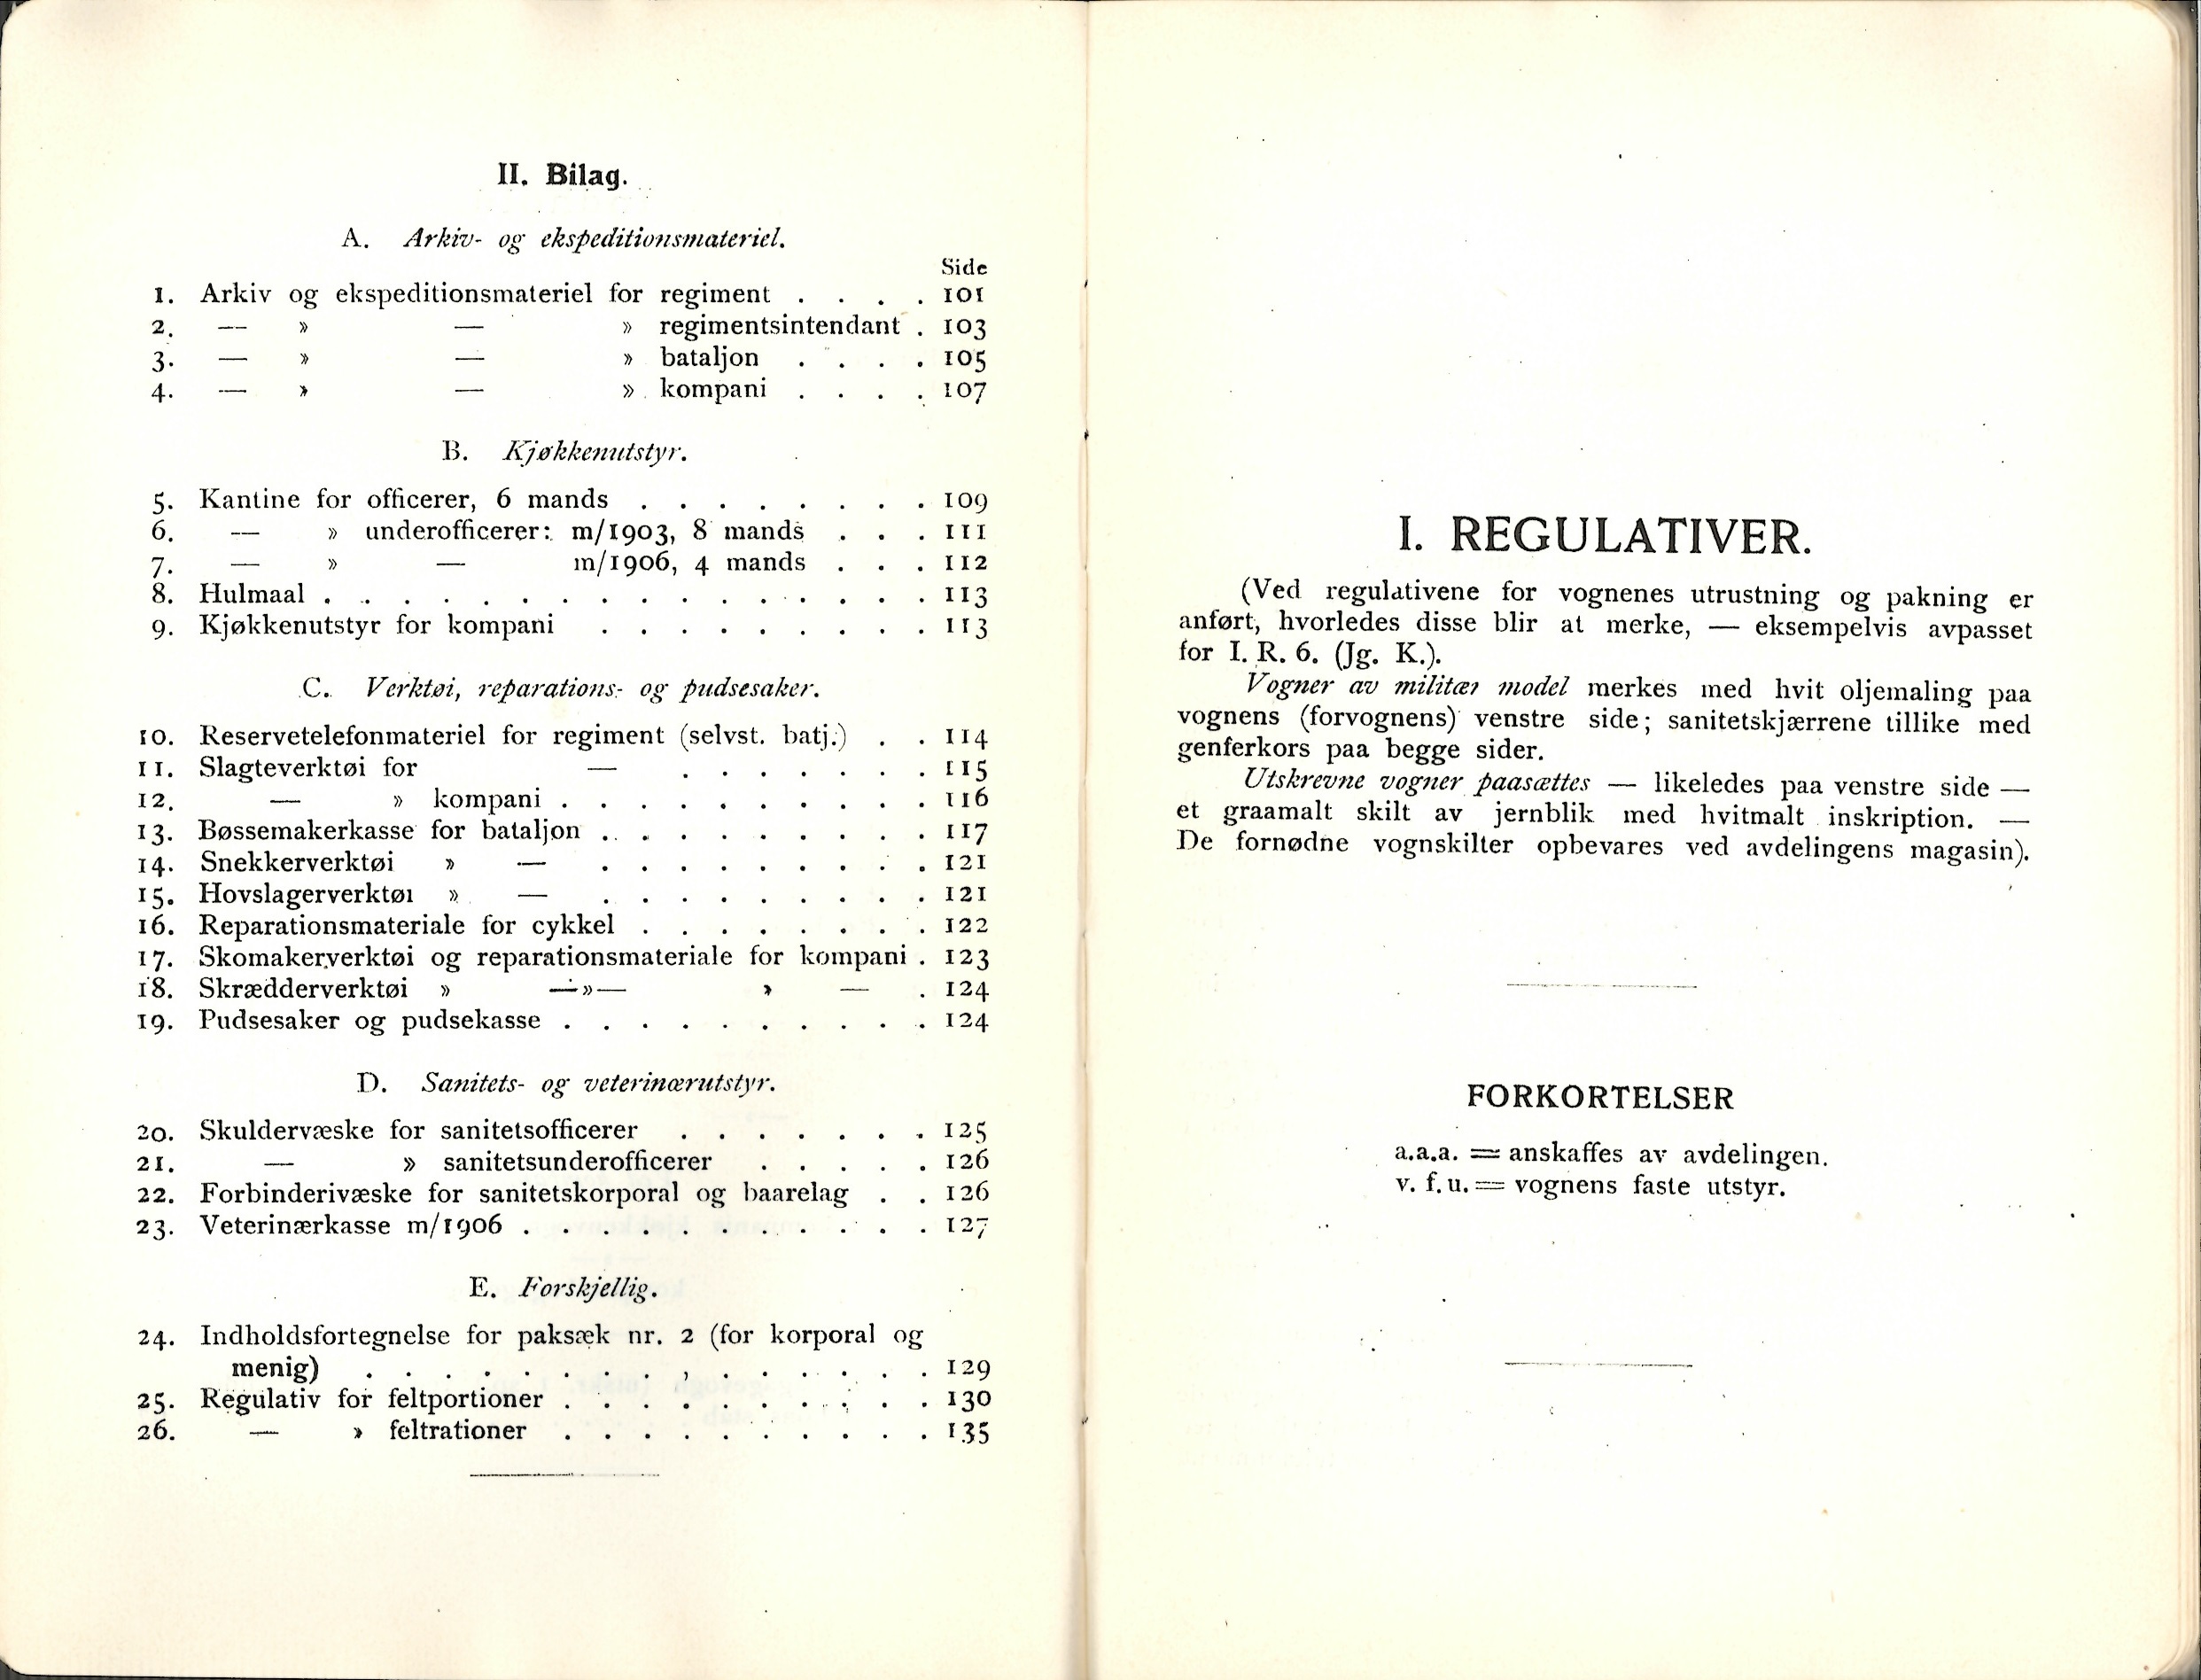 ./doc/reglement/Utrustning/Utrustnings-og-Pakningsplan-1917-3.jpg